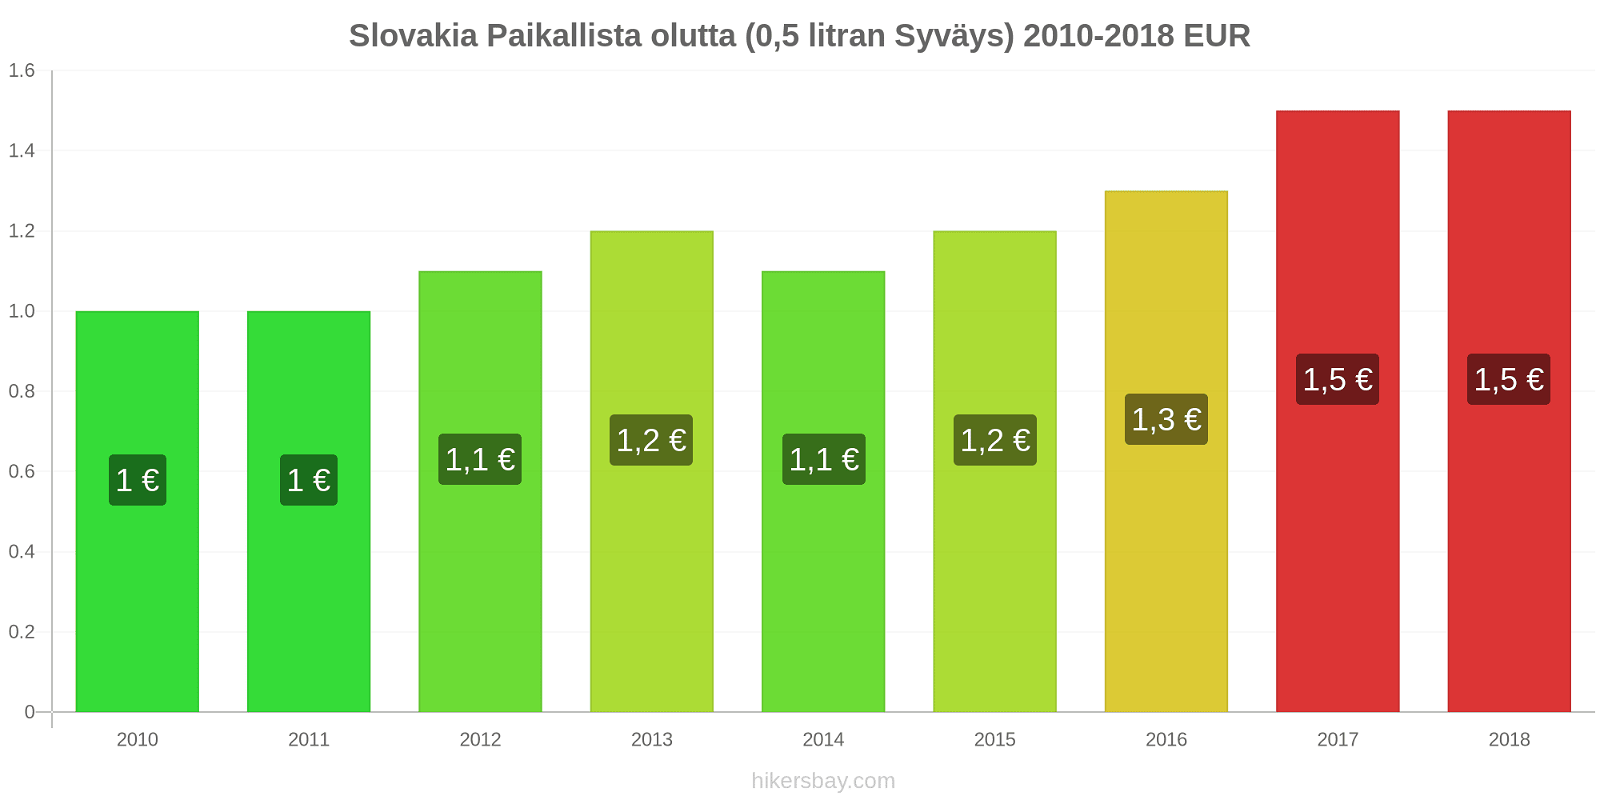 Slovakia hintojen muutokset Paikallista olutta (0,5 litran Syväys) hikersbay.com